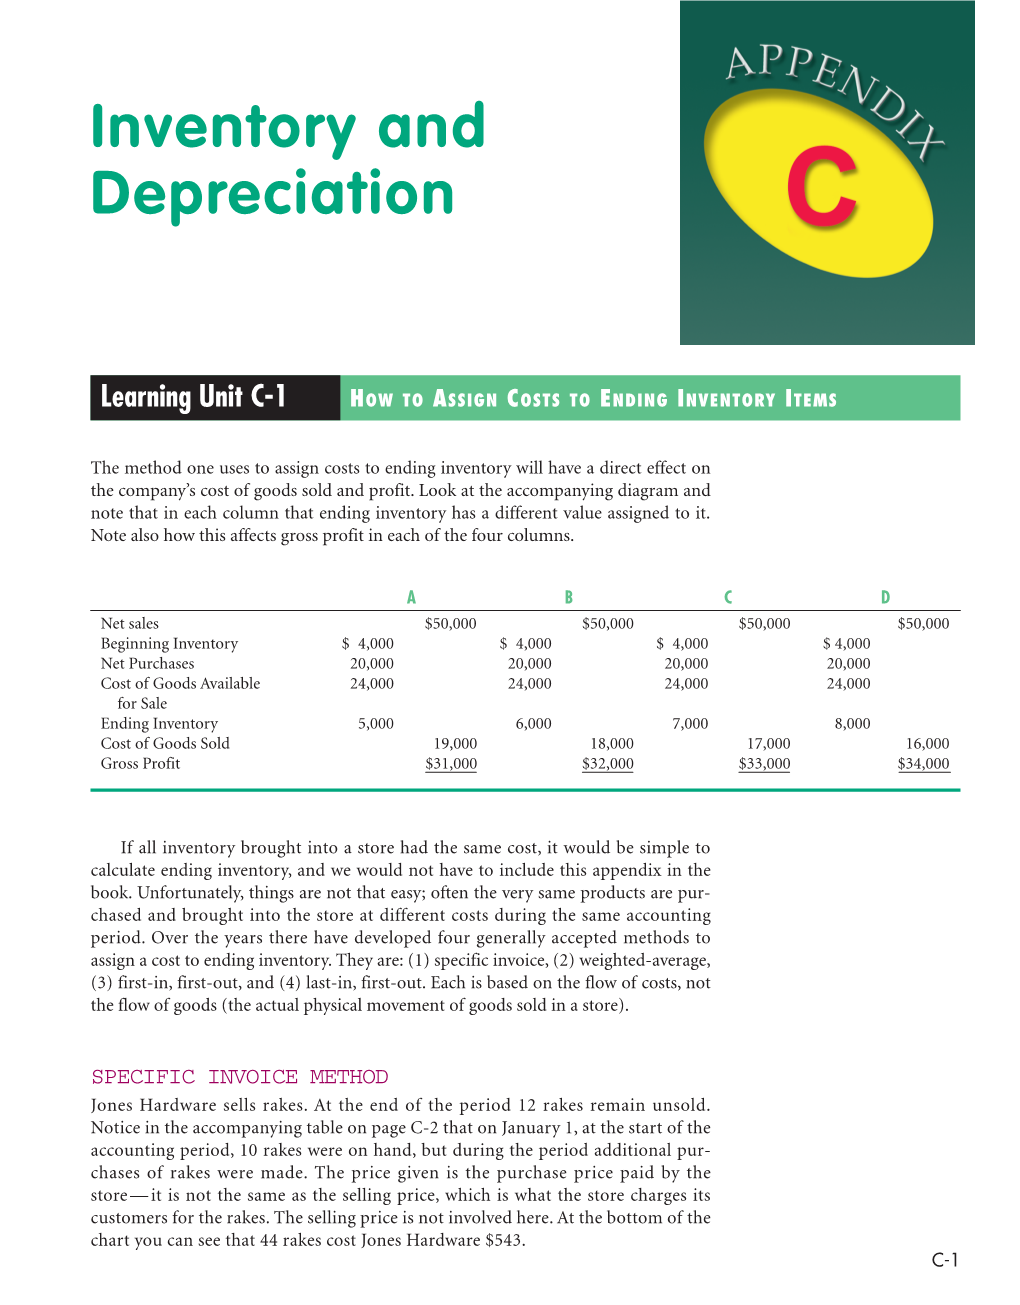 Inventory and Depreciation